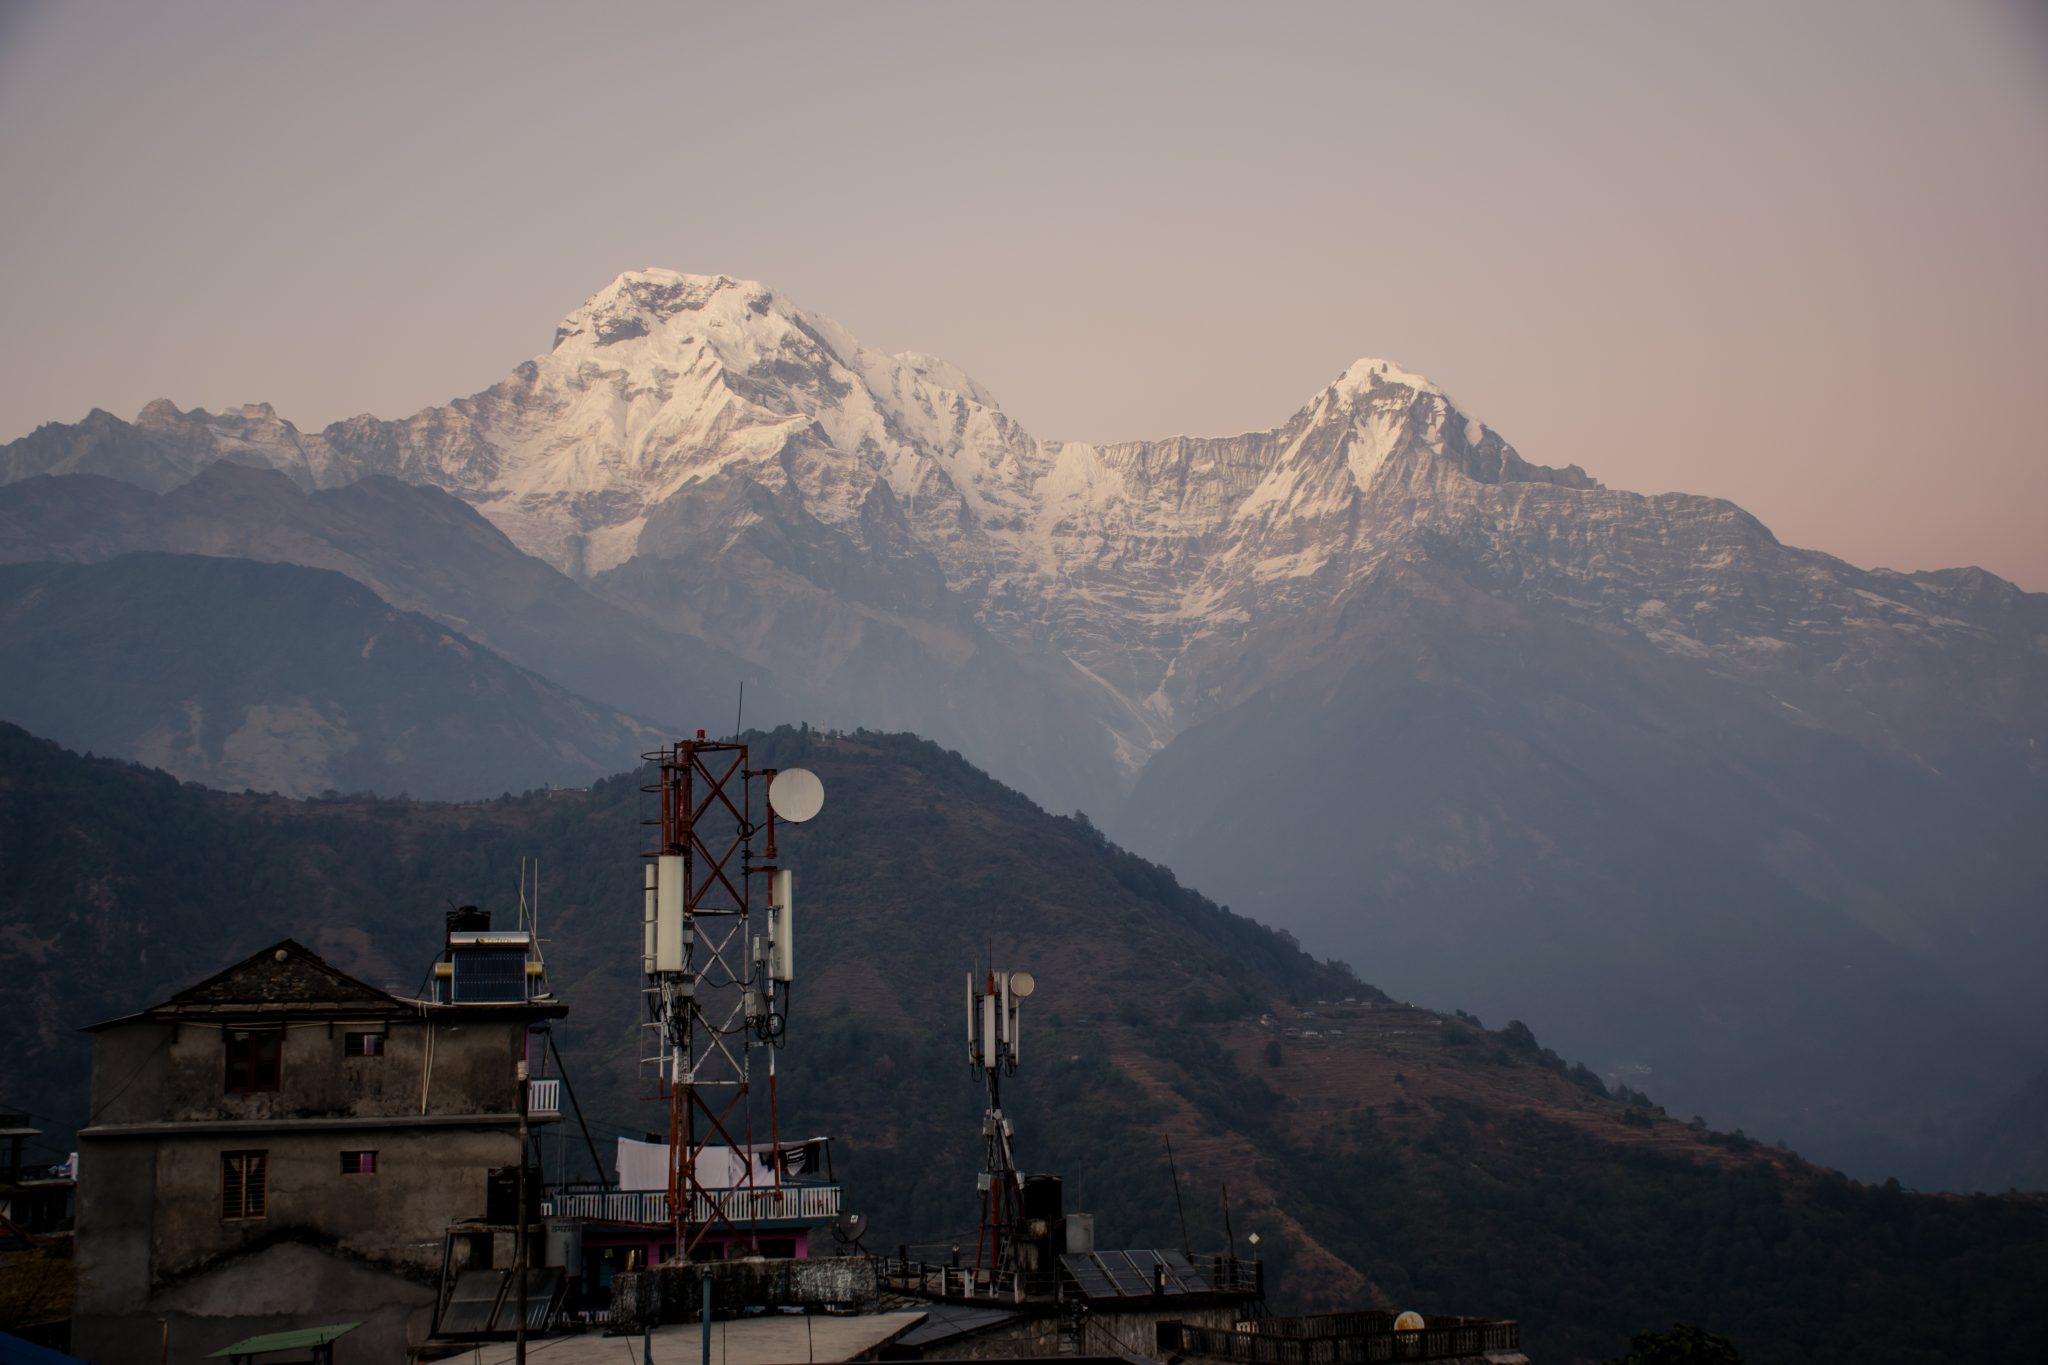 View of Annapurna Mountain Range from Ghandruk